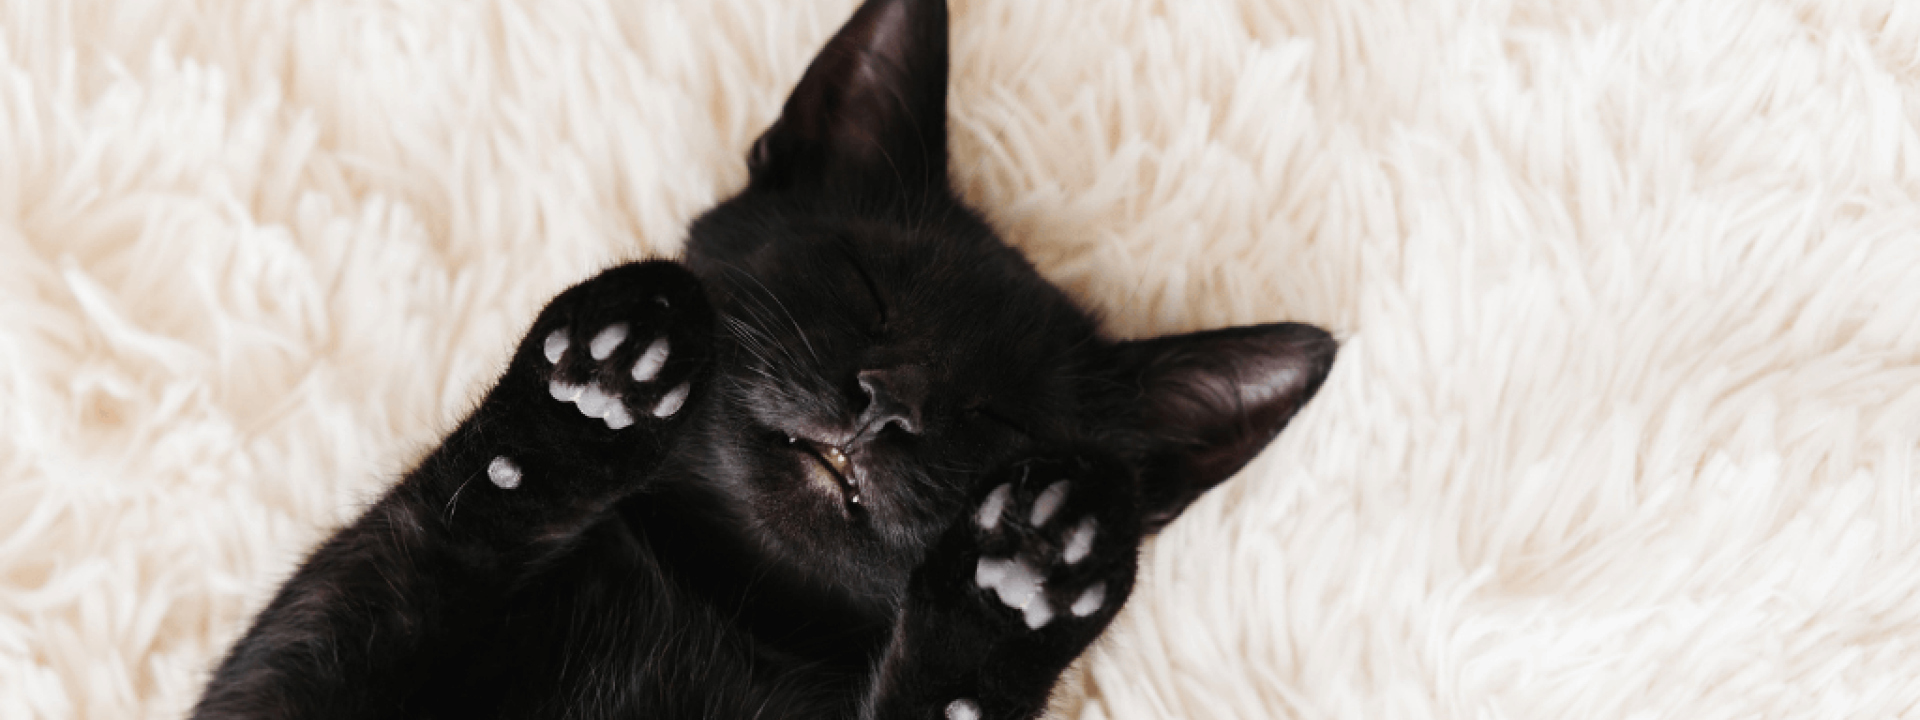 10-reasons-adopt-black-cats.png